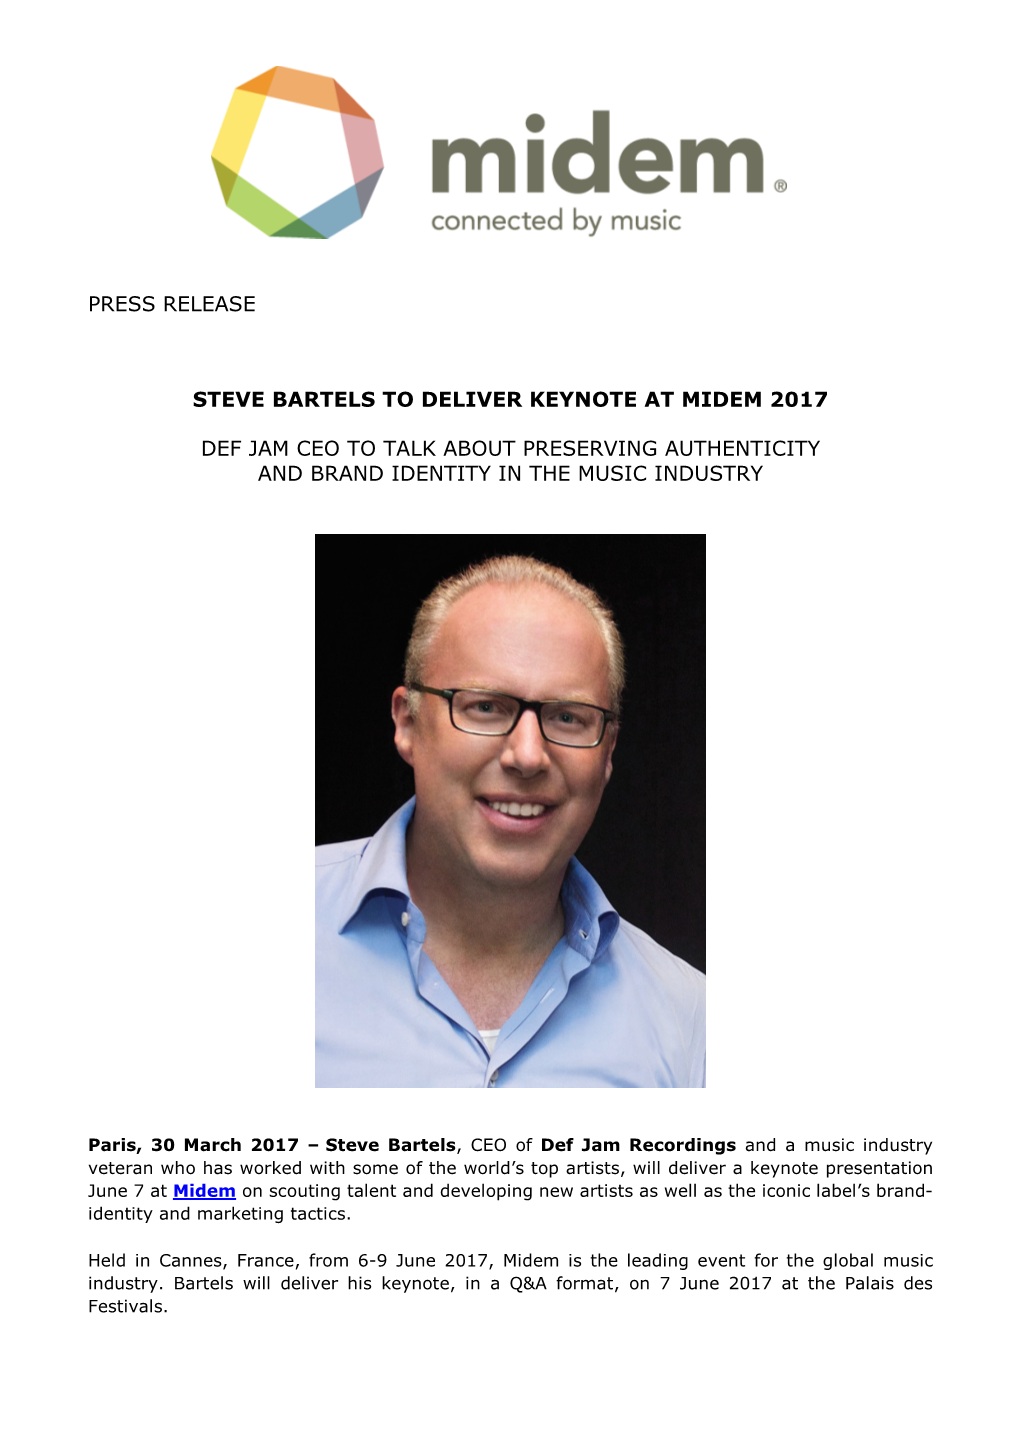 Press Release Steve Bartels to Deliver Keynote at Midem